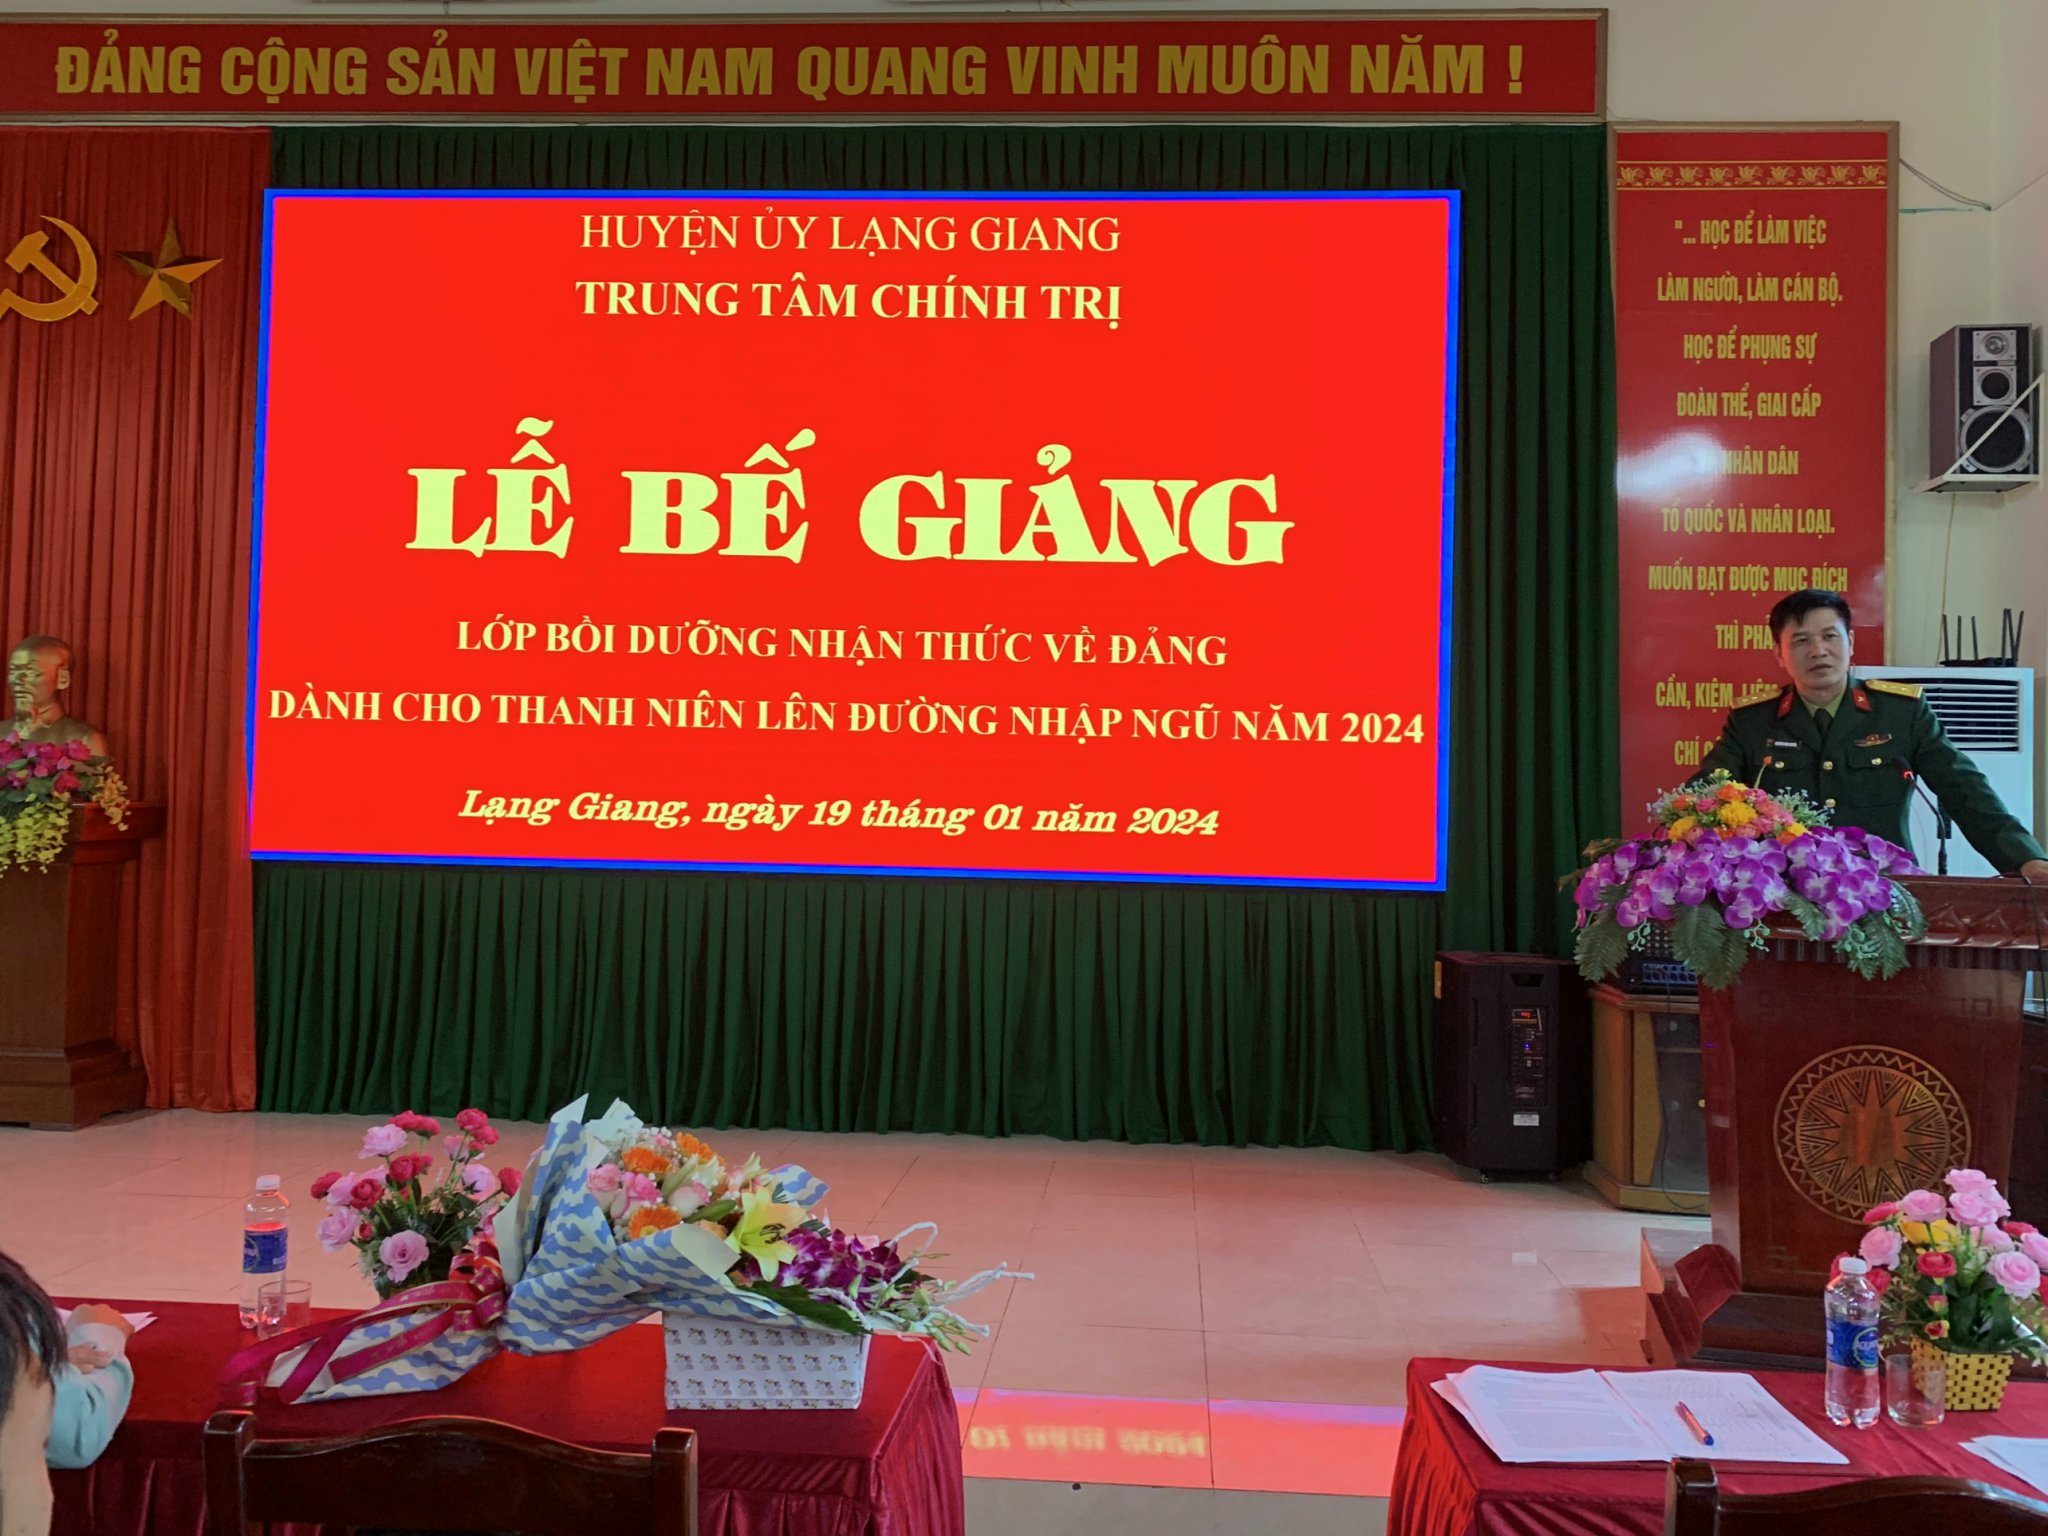 Nâng cao chất lượng học tập lý luận chính trị ở Đảng bộ tỉnh Bắc Giang trong giai đoạn hiện nay